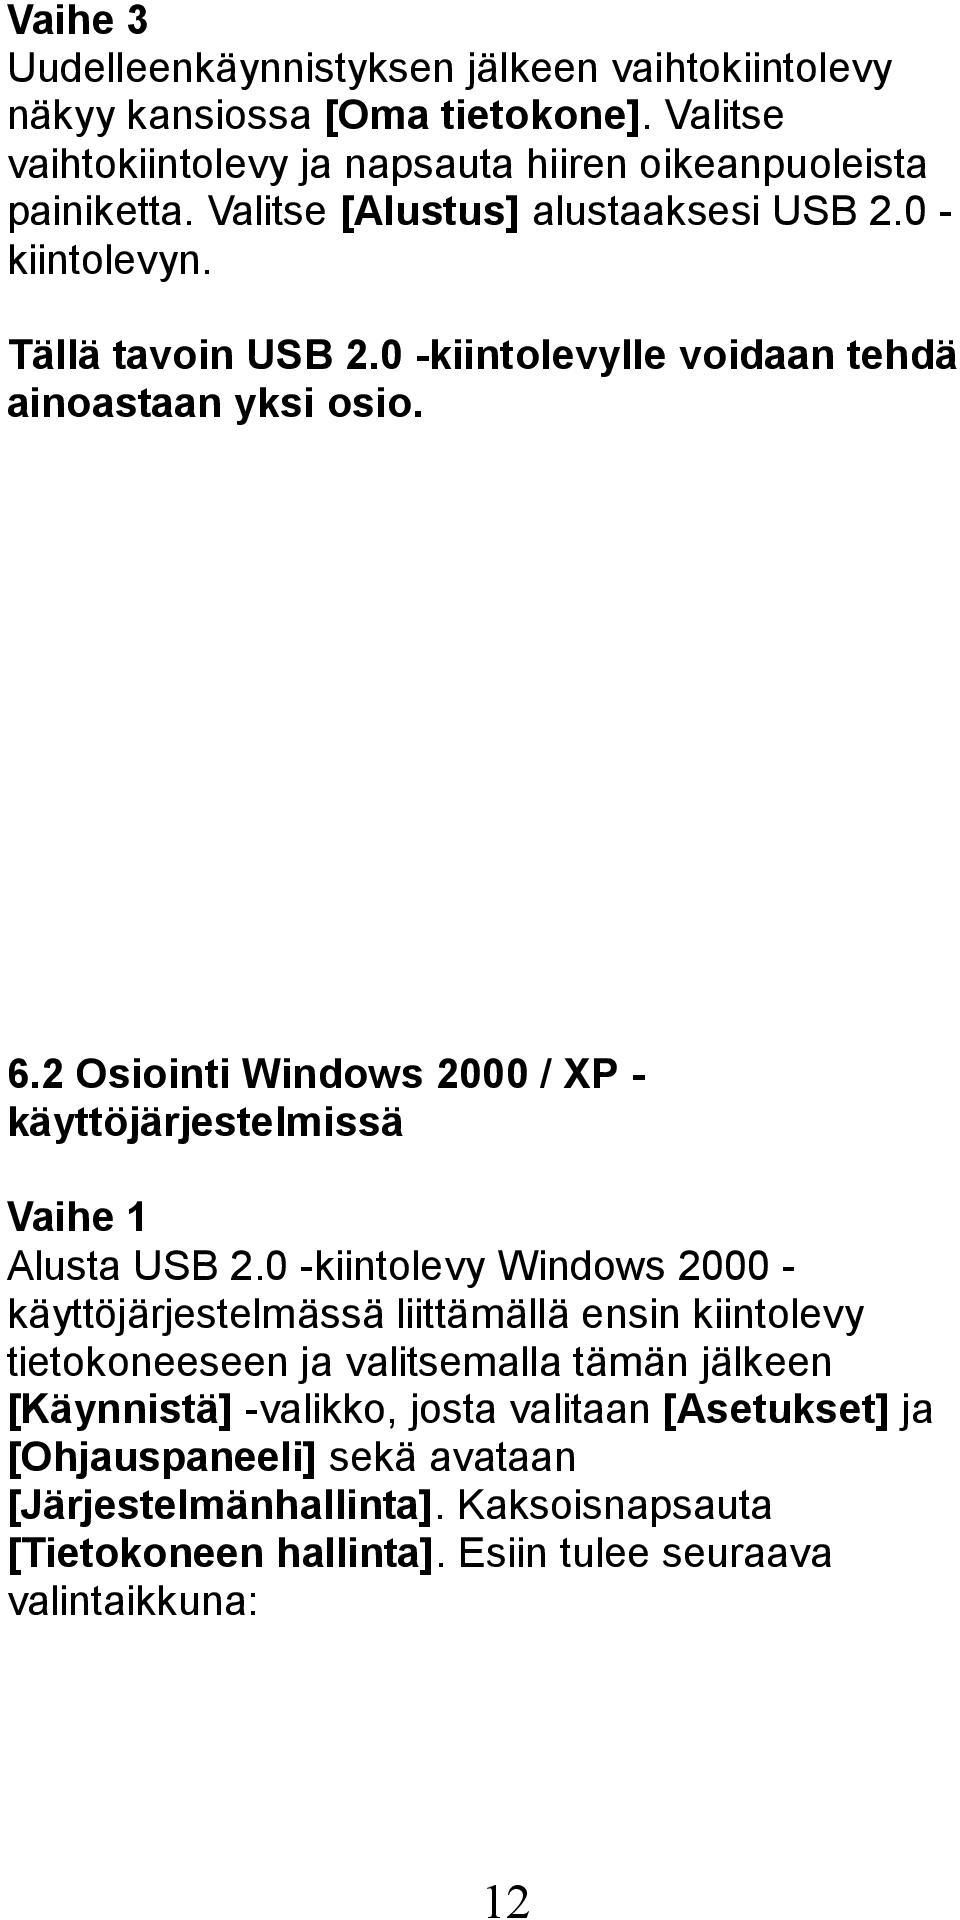 2 Osiointi Windows 2000 / XP - käyttöjärjestelmissä Vaihe 1 Alusta USB 2.